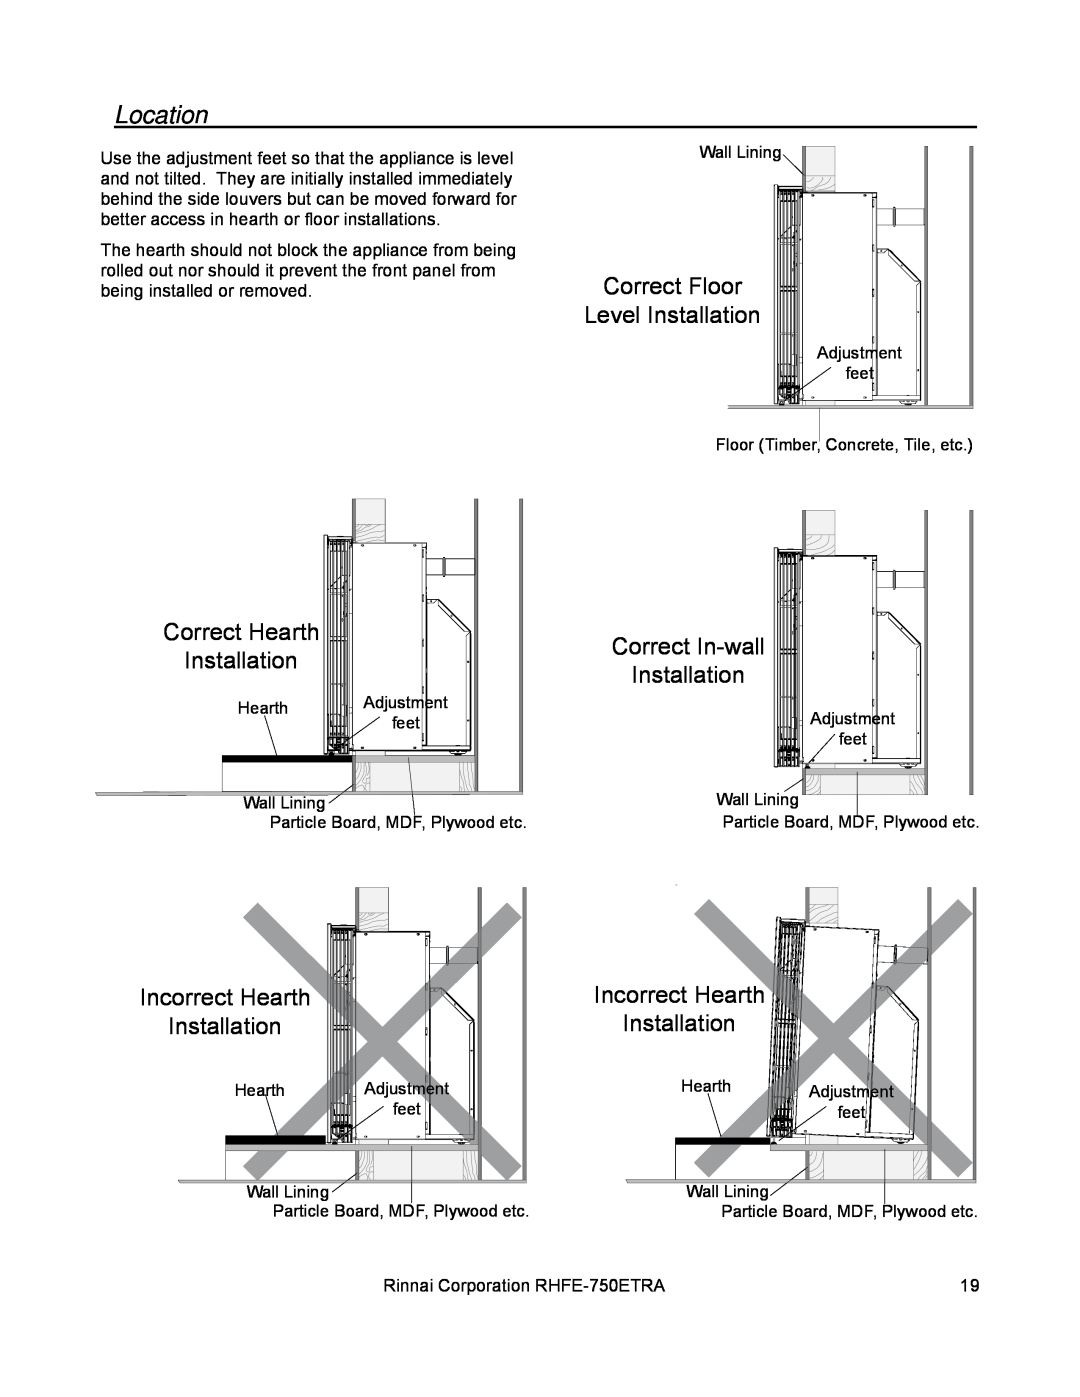 Rinnai RHFE-750ETRA installation manual Location, Correct Floor, Level Installation, Correct Hearth, Correct In-wall 